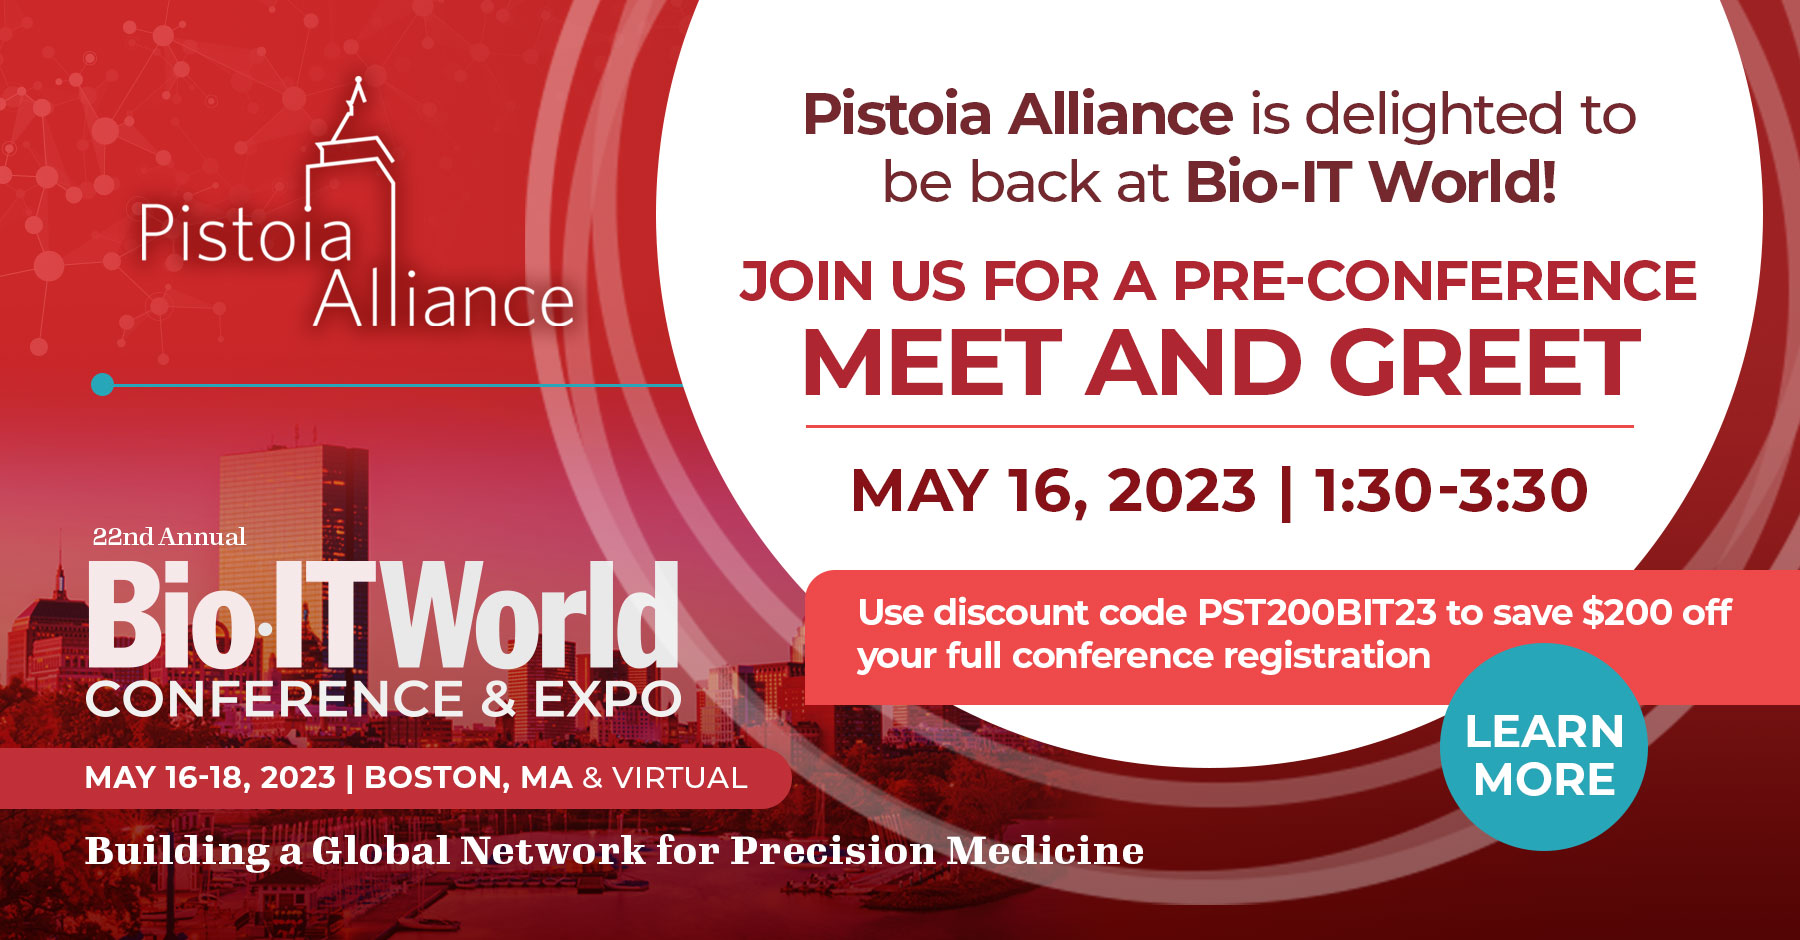 Meet & Greet Pistoia Alliance At Bio IT, Room 310, Boston